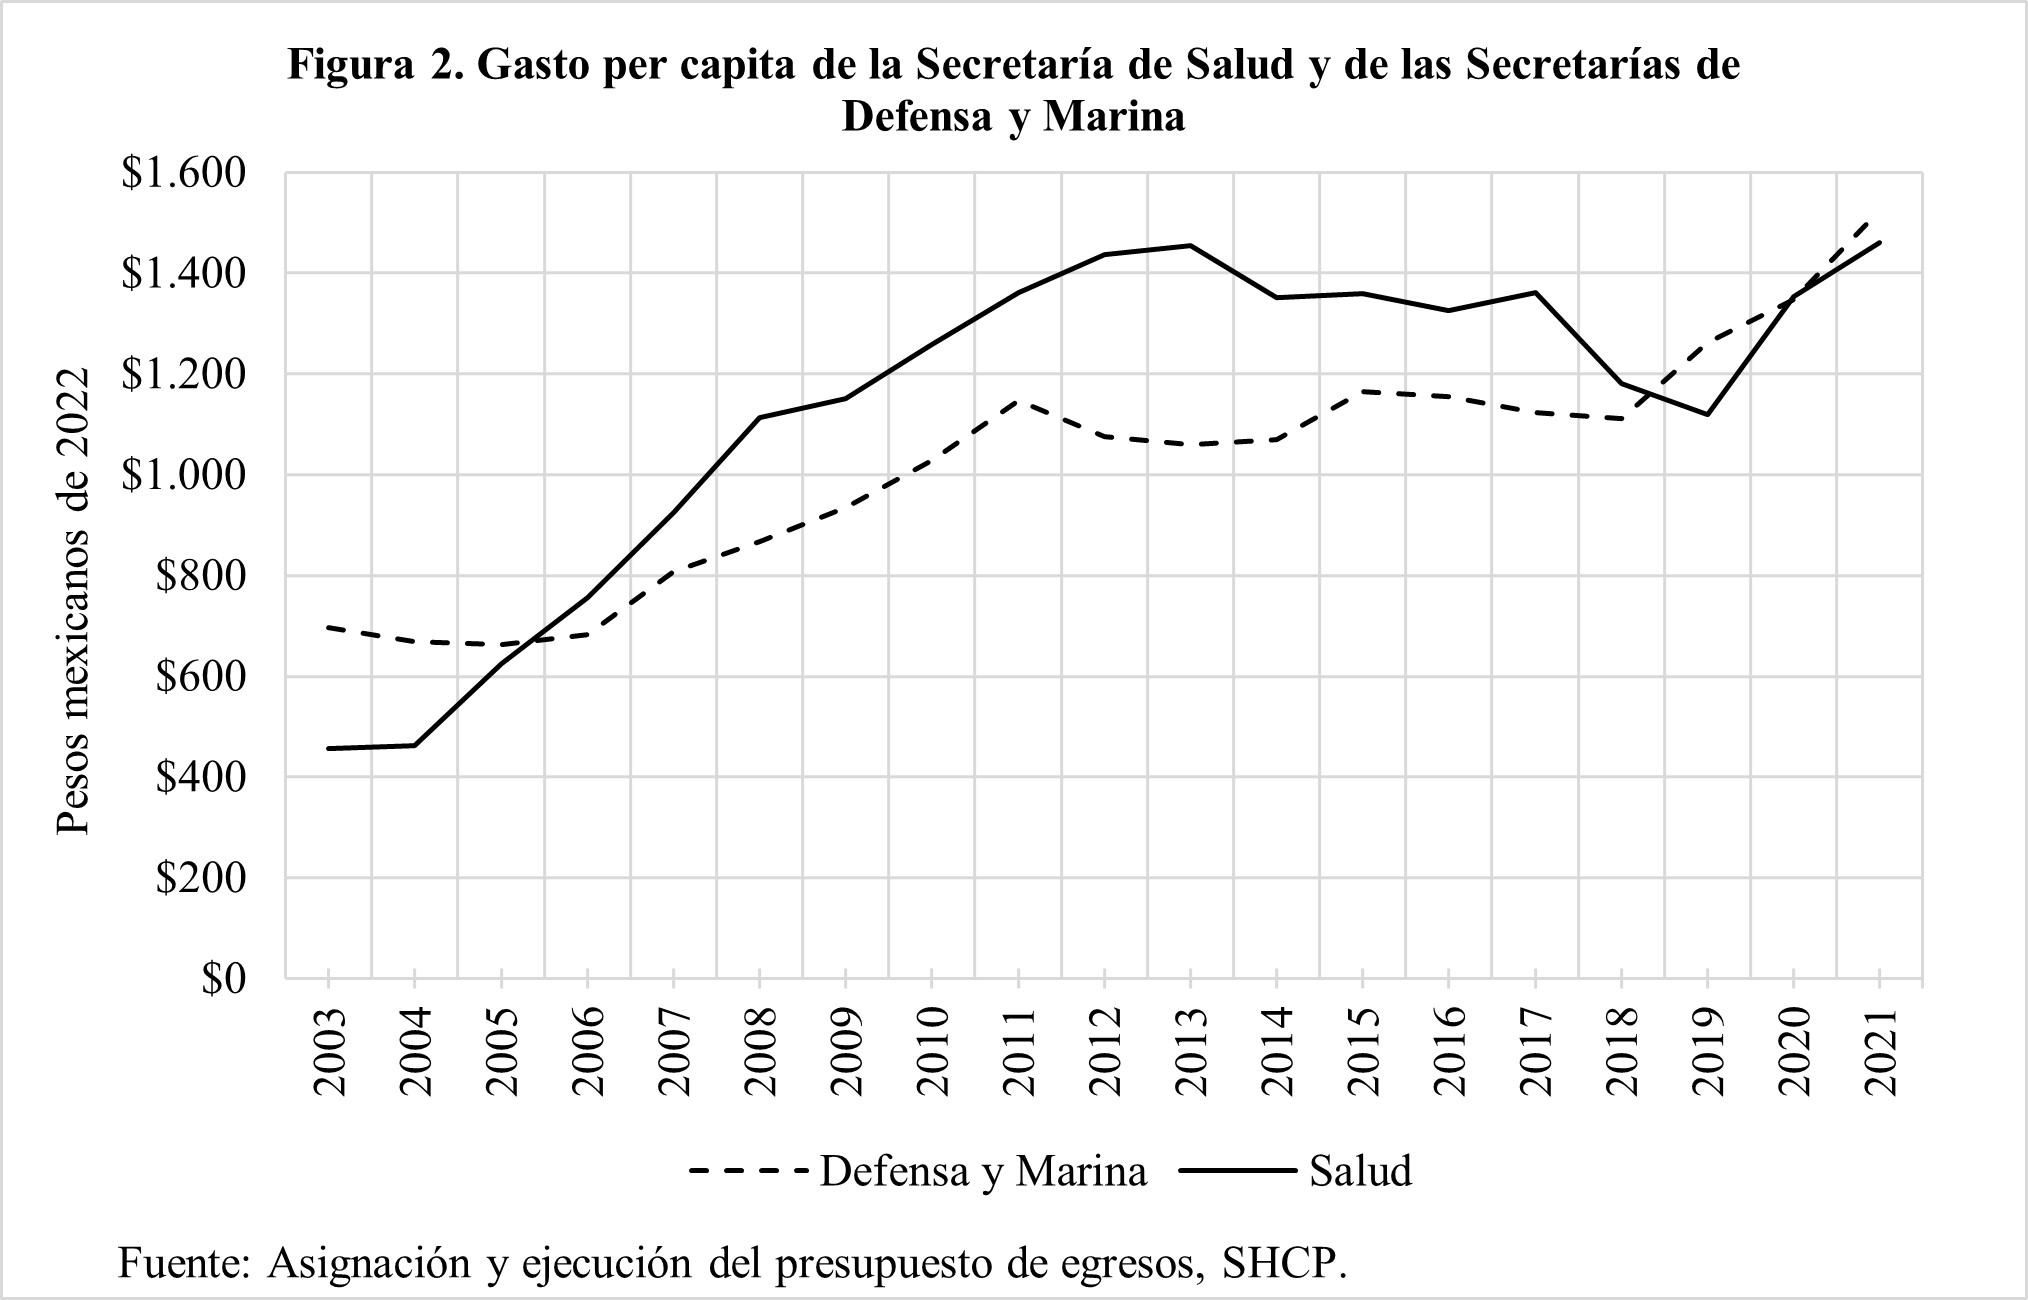 Comparativa de gastos de Secretaría Militar respecto a Secretaría de Salud 2003 - 2021